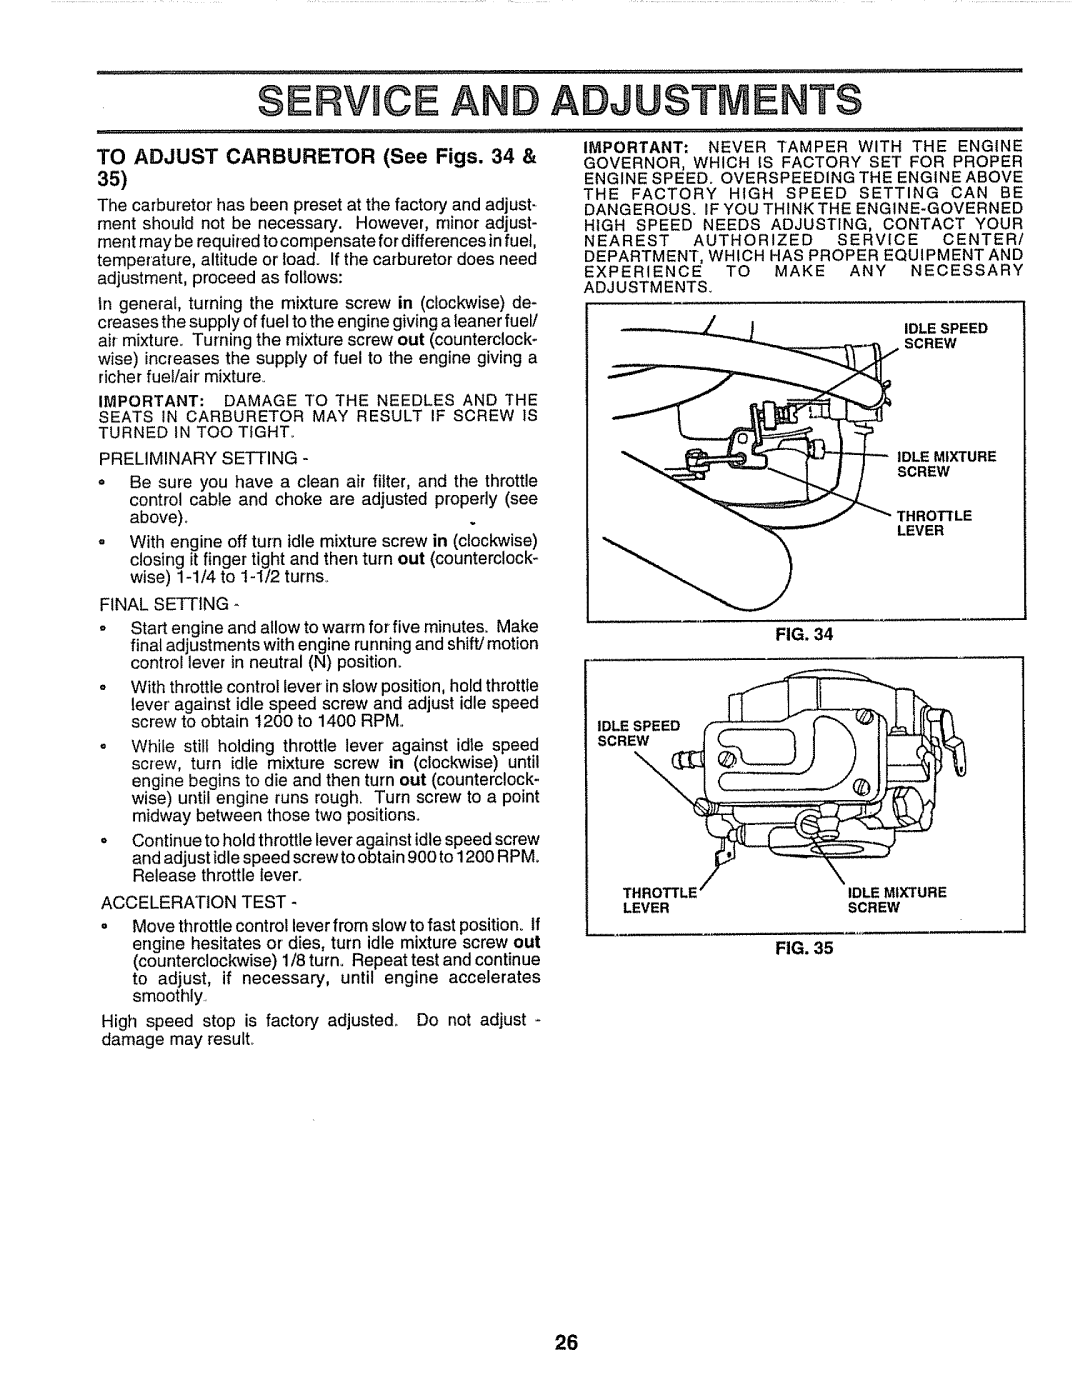 Craftsman 917.259172 manual Erv Ce And, Adjustments, TO ADJUST CARBURETOR See Figs. 34 